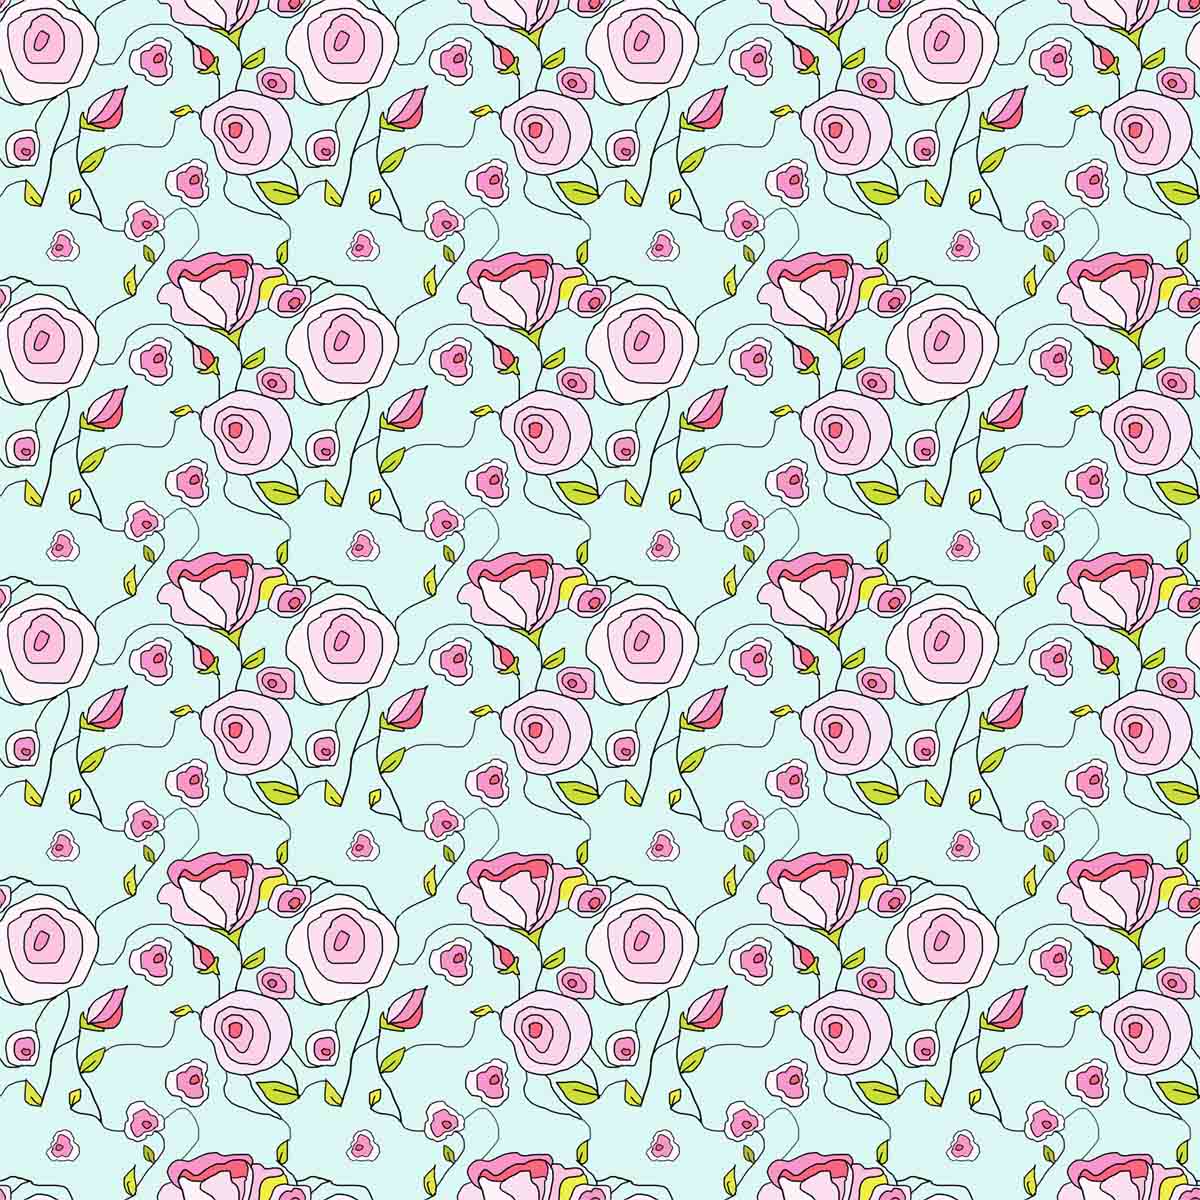 art every day number 520 illustration pattern art never-ending secret garden janet bright